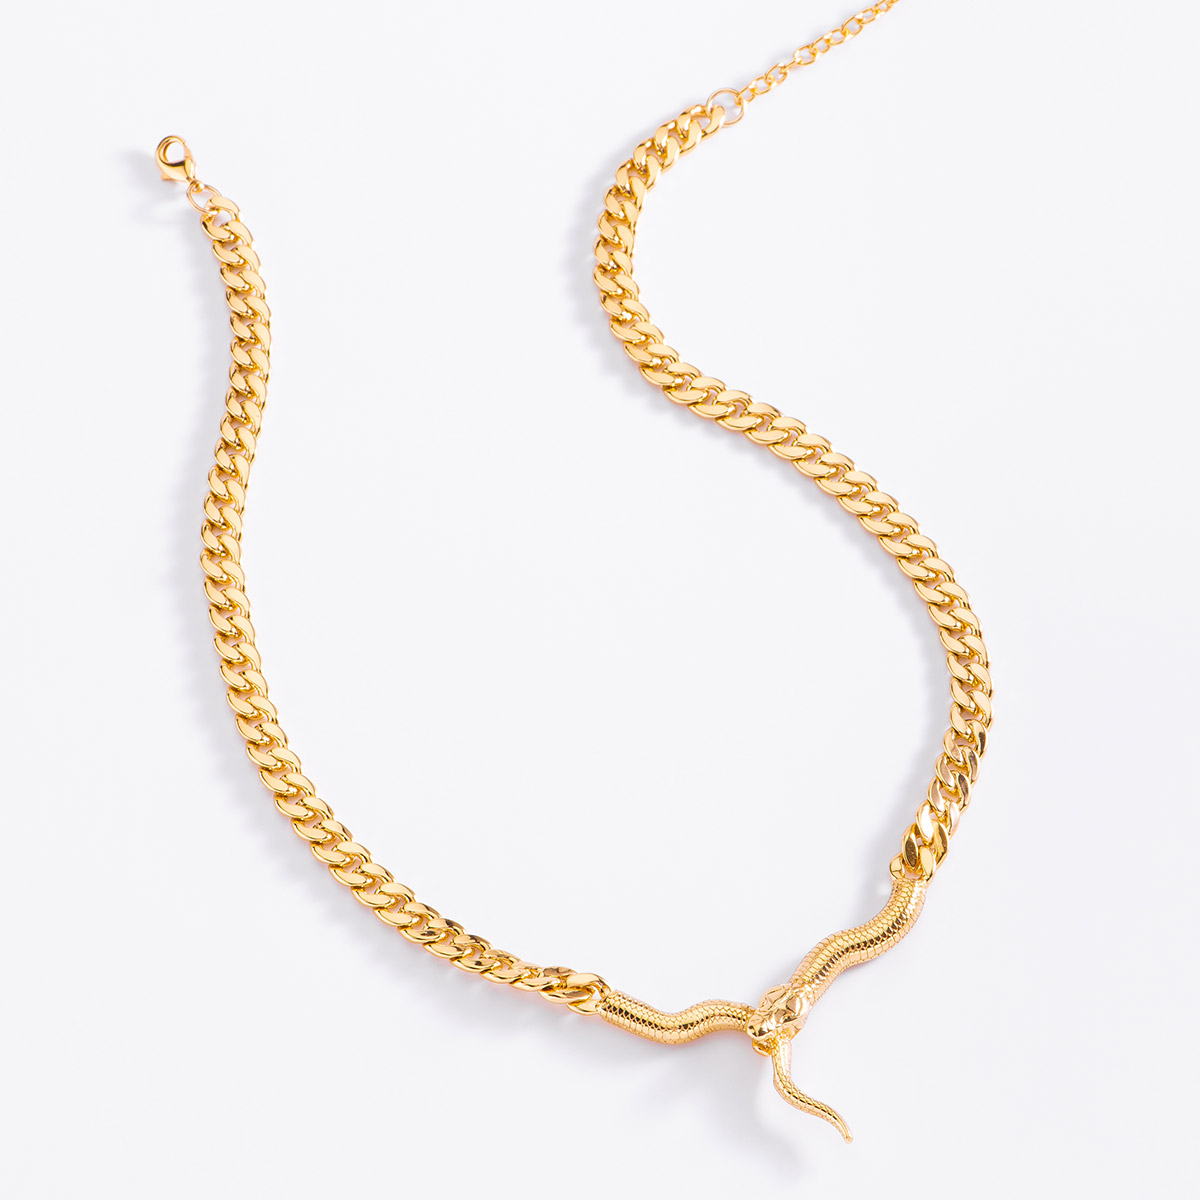 Collar con forma de serpiente de 42 cm + 10 cm de ext, en baño de oro.